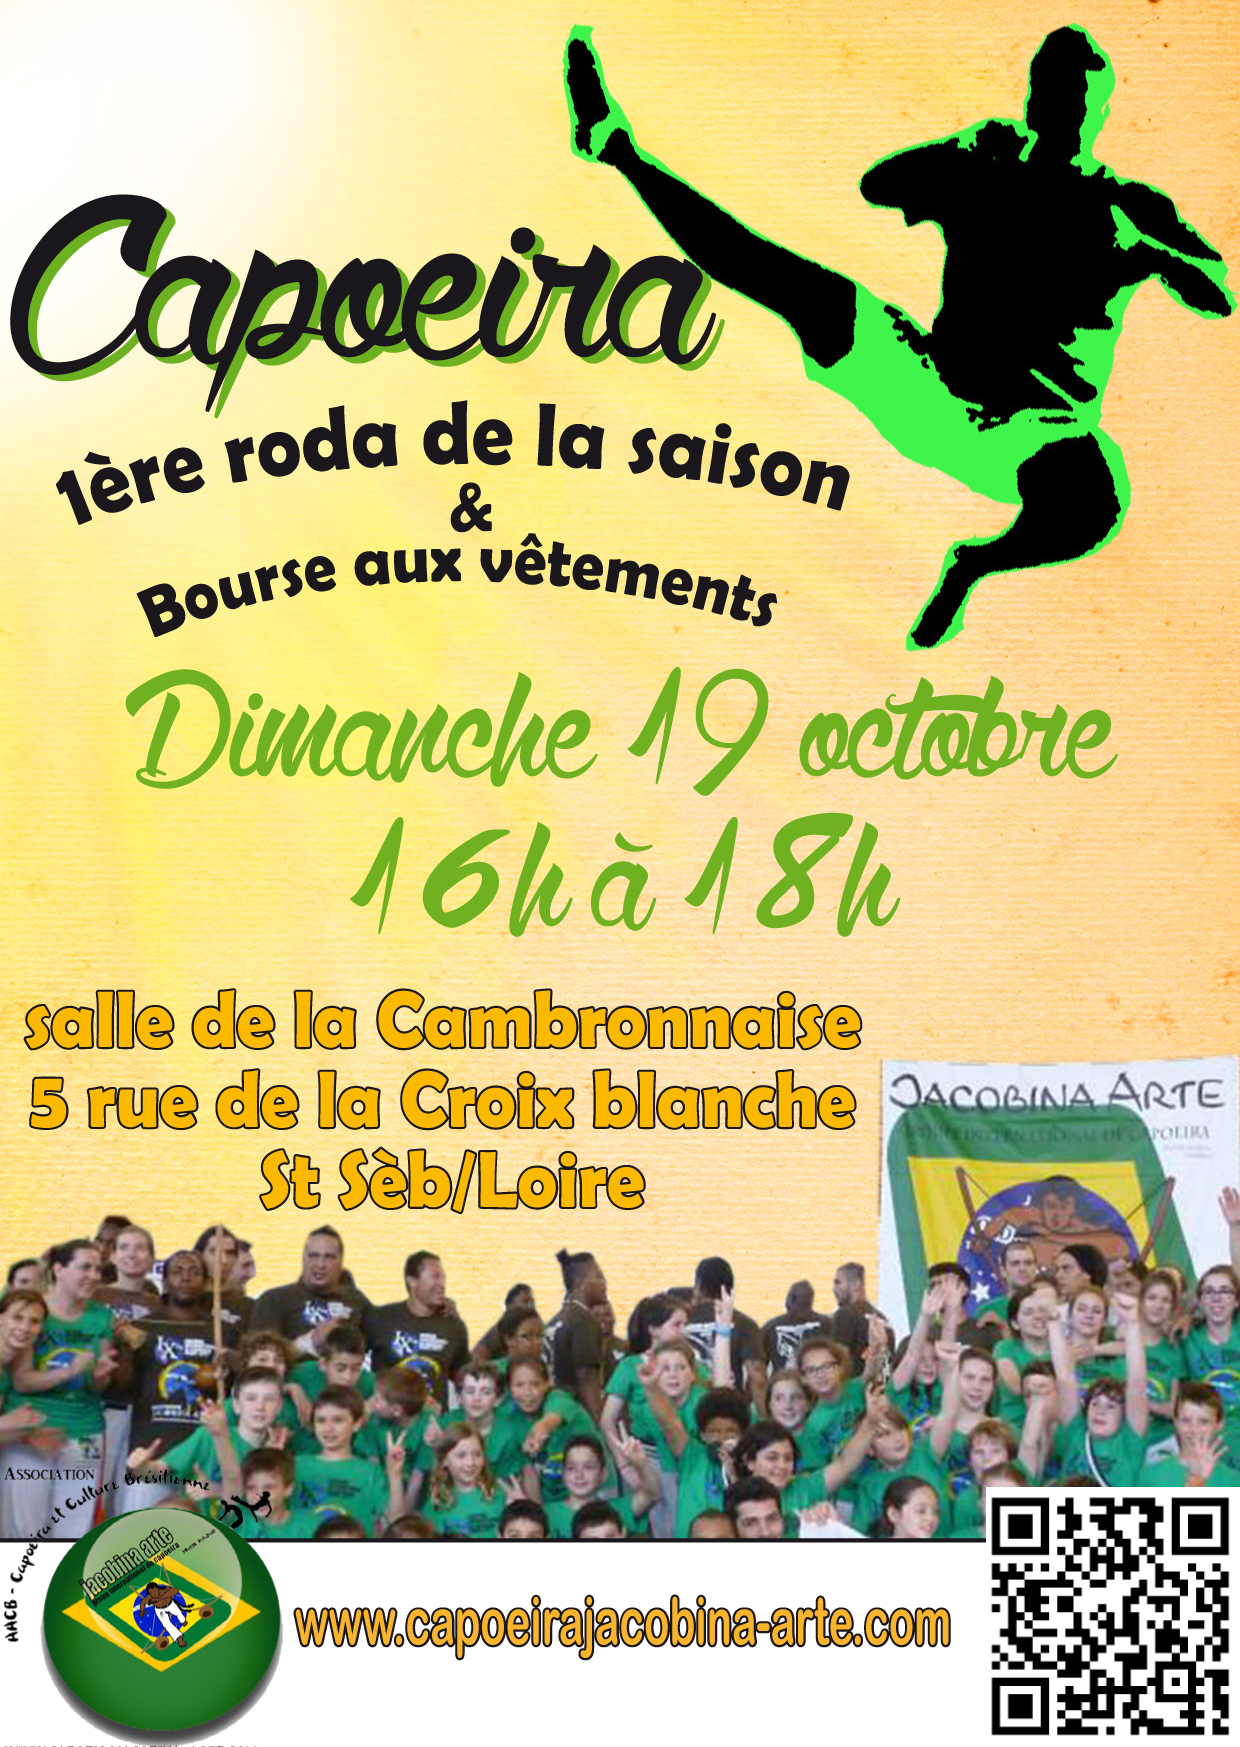 flyer capoeira jacobina arte 1ère Roda de la saison